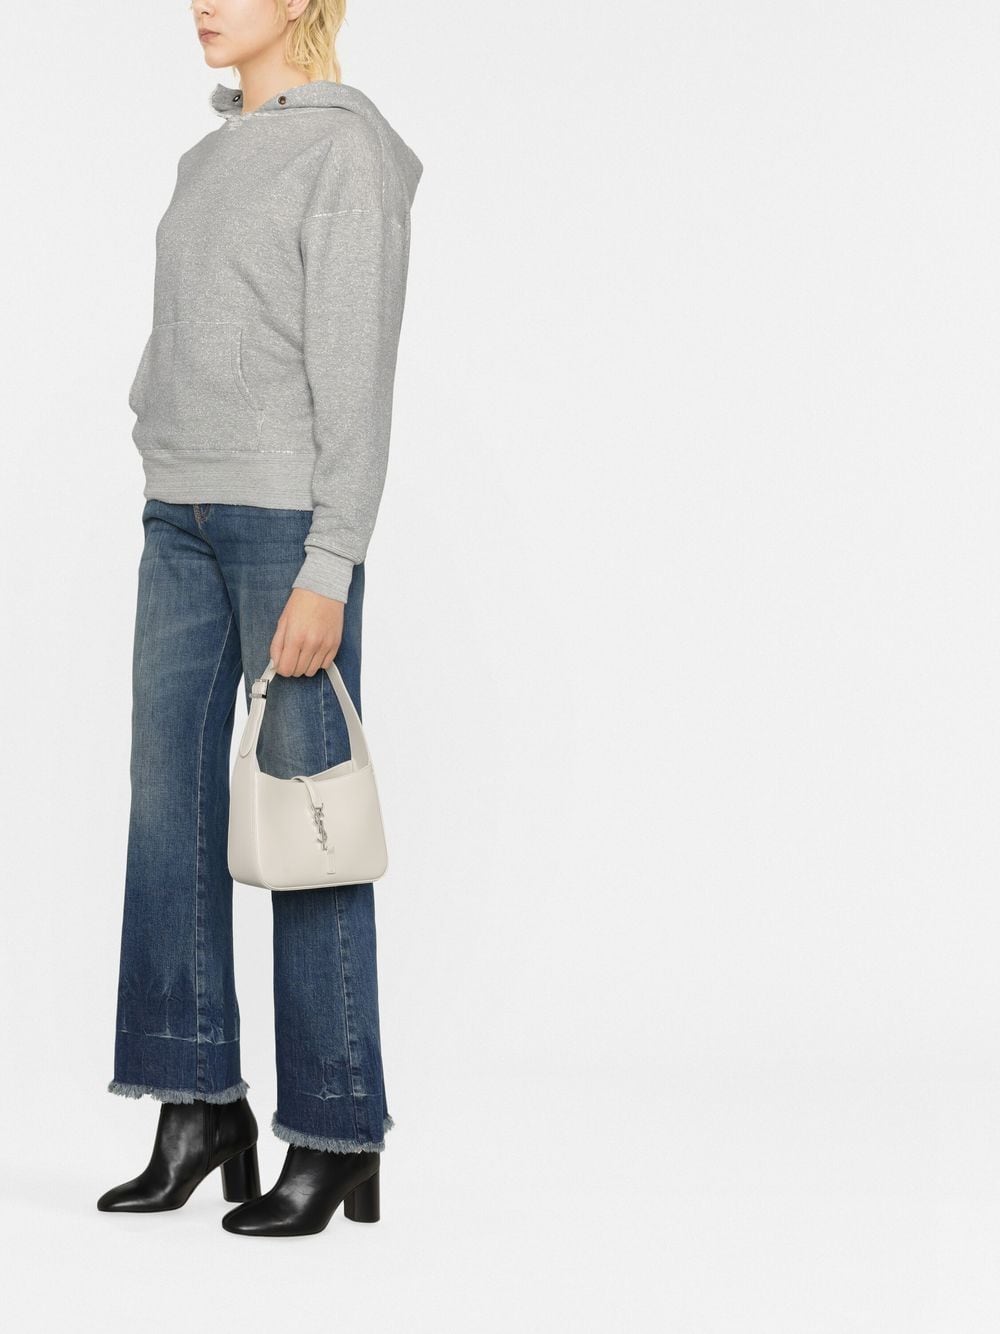 Yves Saint Laurent  Винтажный стиль одежды, Наряды, Стиль